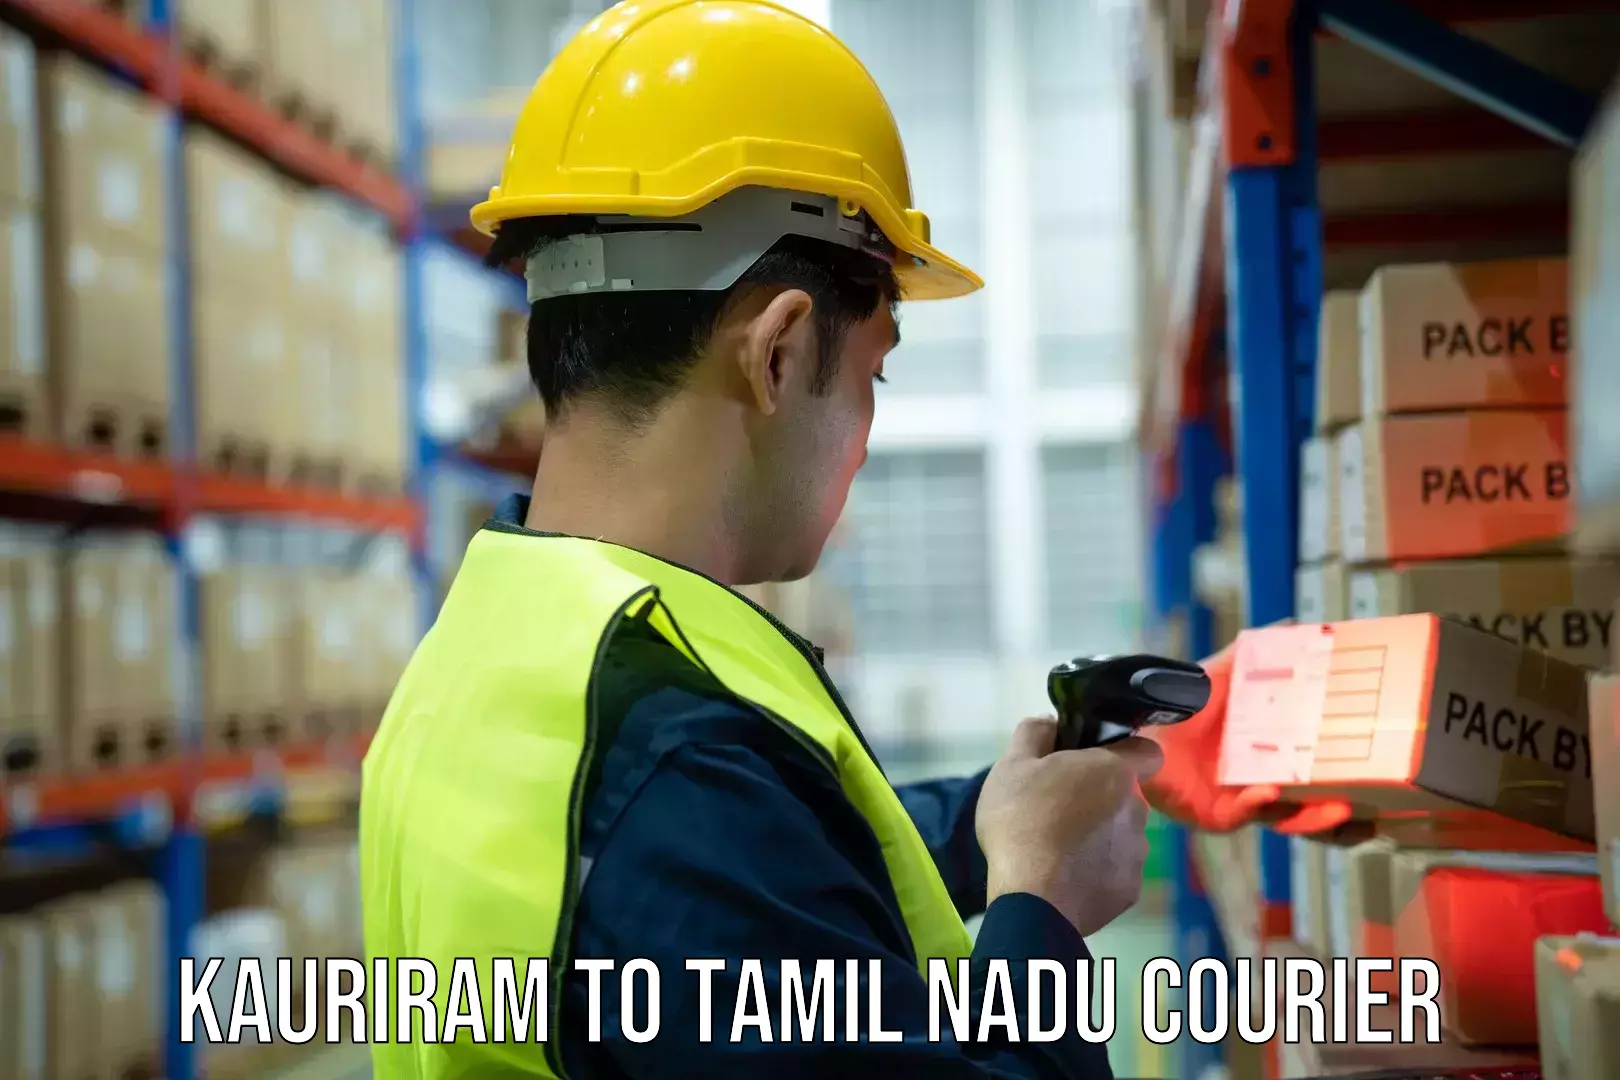 Specialized courier services Kauriram to IIIT Tiruchirappalli